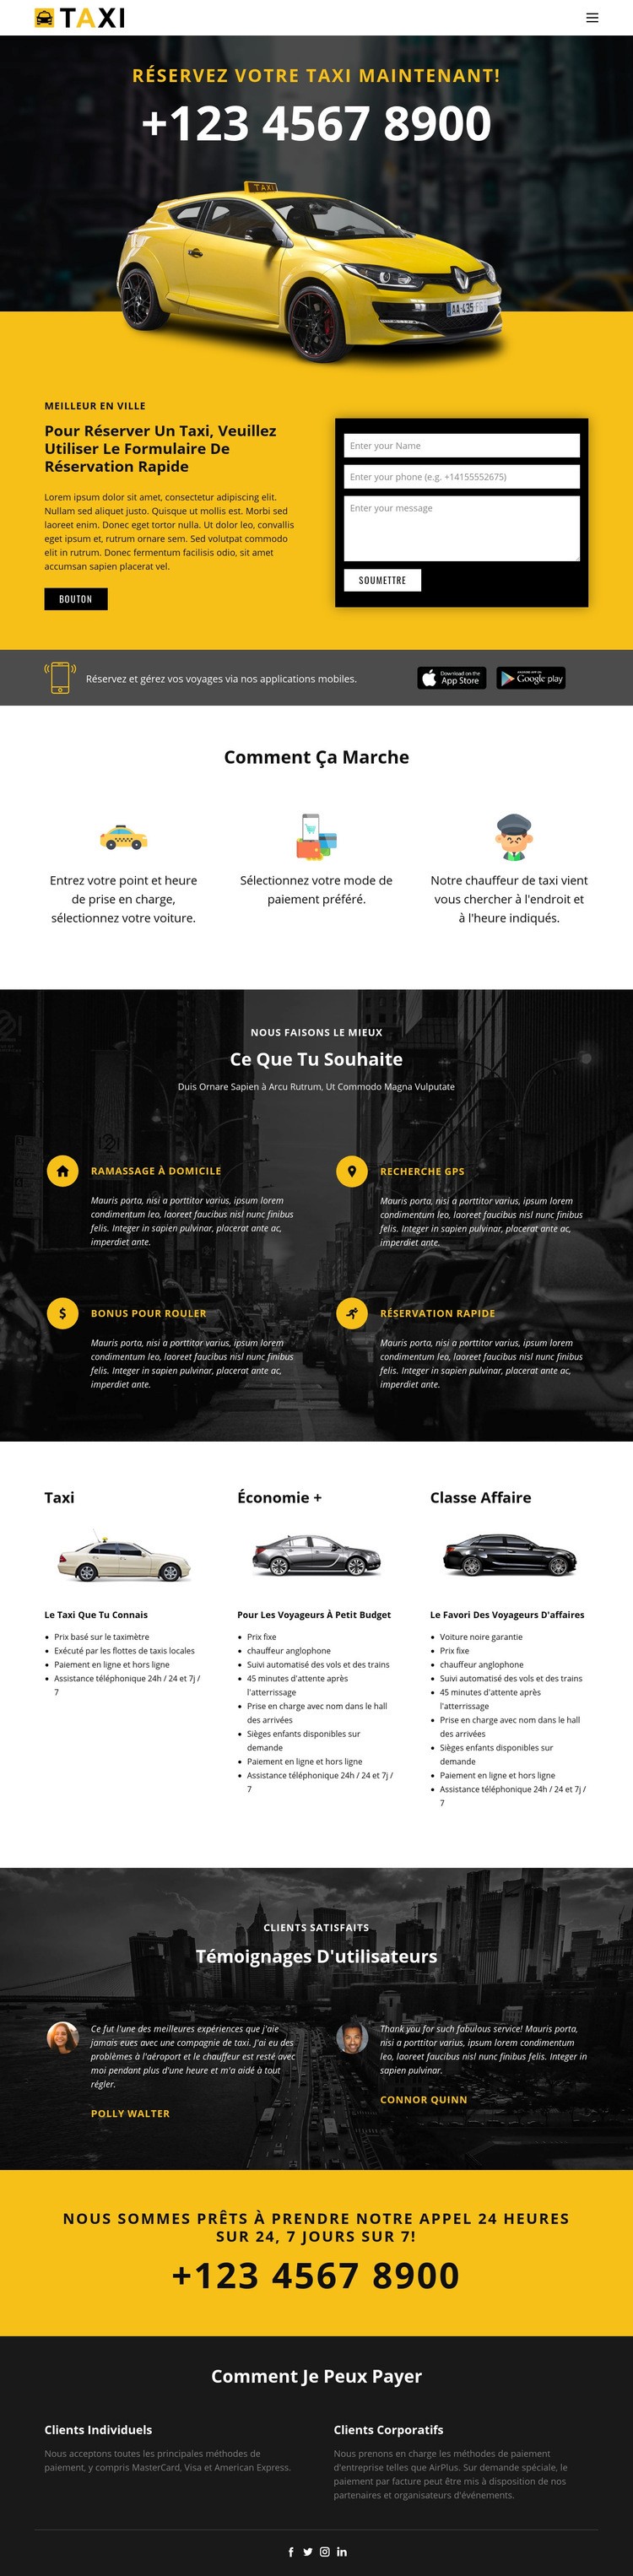 Voitures de taxi les plus rapides Modèles de constructeur de sites Web